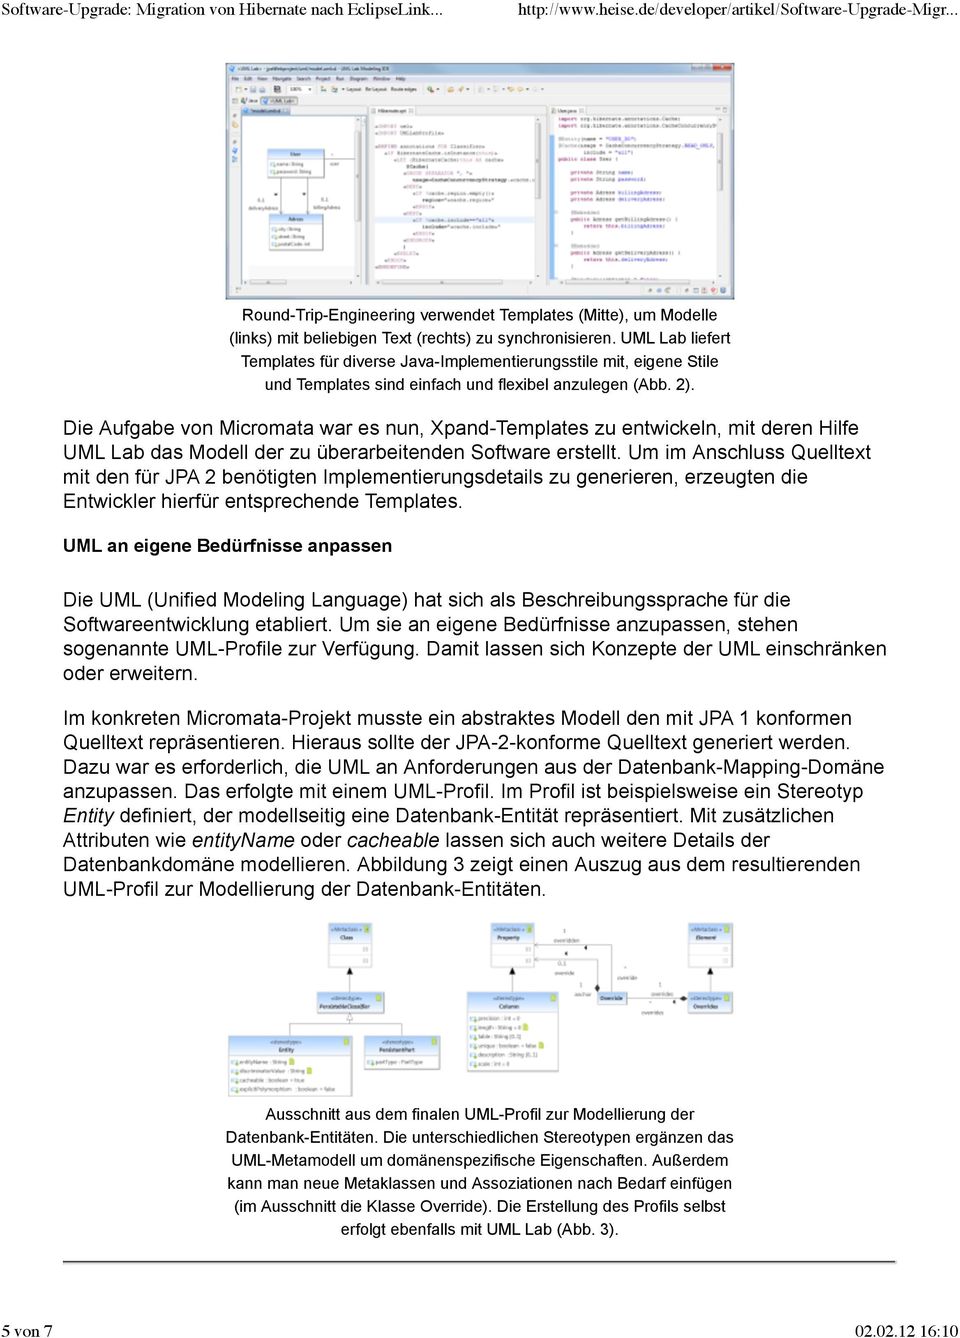 Die Aufgabe von Micromata war es nun, Xpand-Templates zu entwickeln, mit deren Hilfe UML Lab das Modell der zu überarbeitenden Software erstellt.